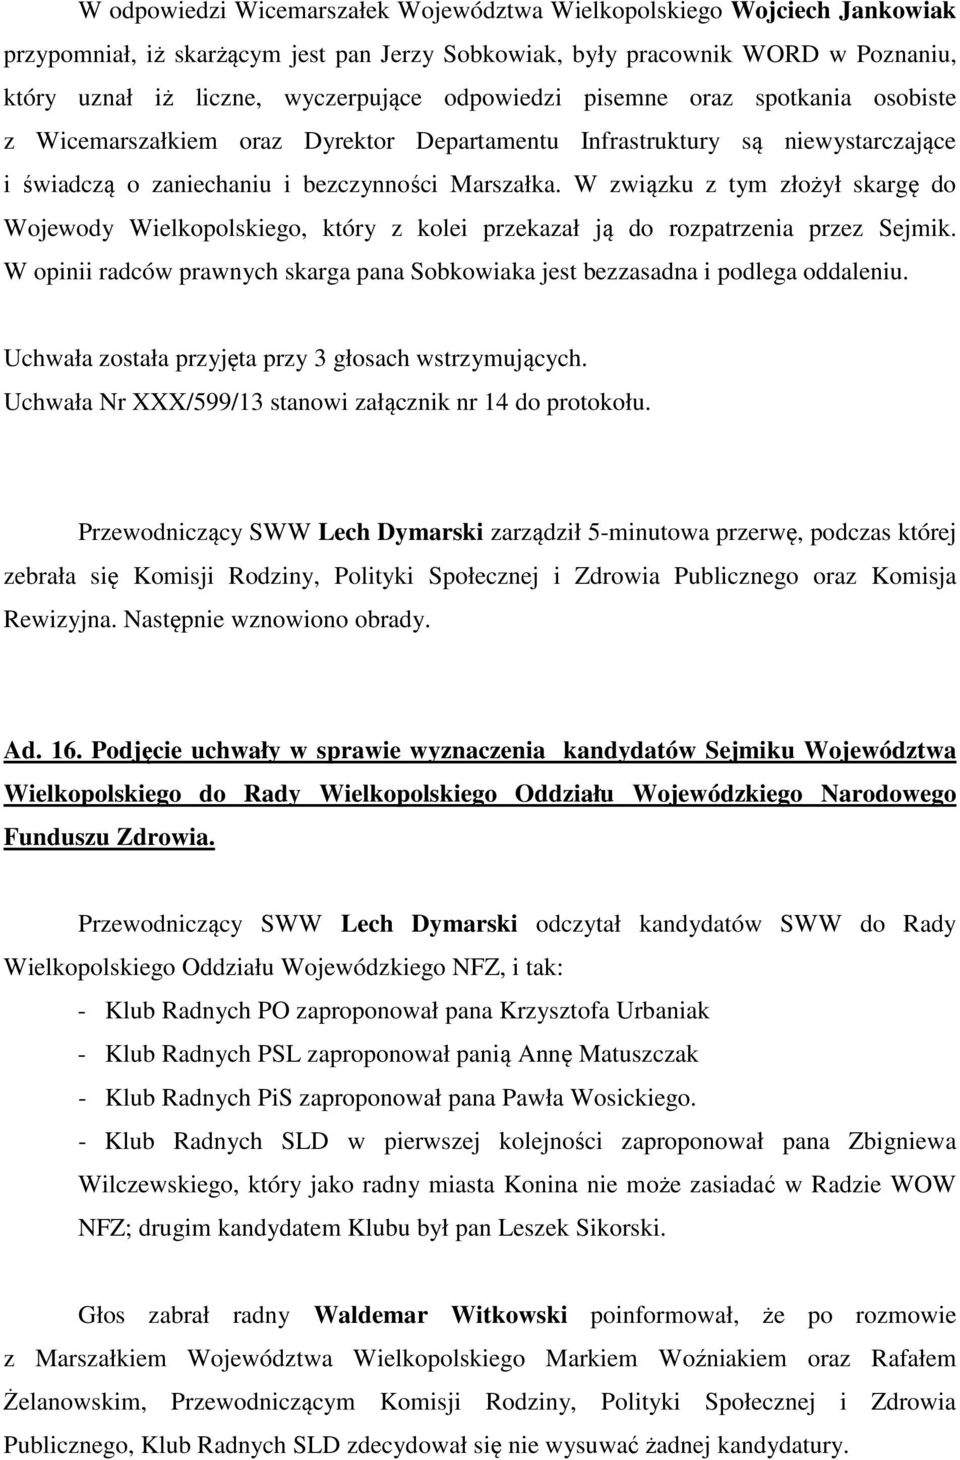 W związku z tym złożył skargę do Wojewody Wielkopolskiego, który z kolei przekazał ją do rozpatrzenia przez Sejmik. W opinii radców prawnych skarga pana Sobkowiaka jest bezzasadna i podlega oddaleniu.